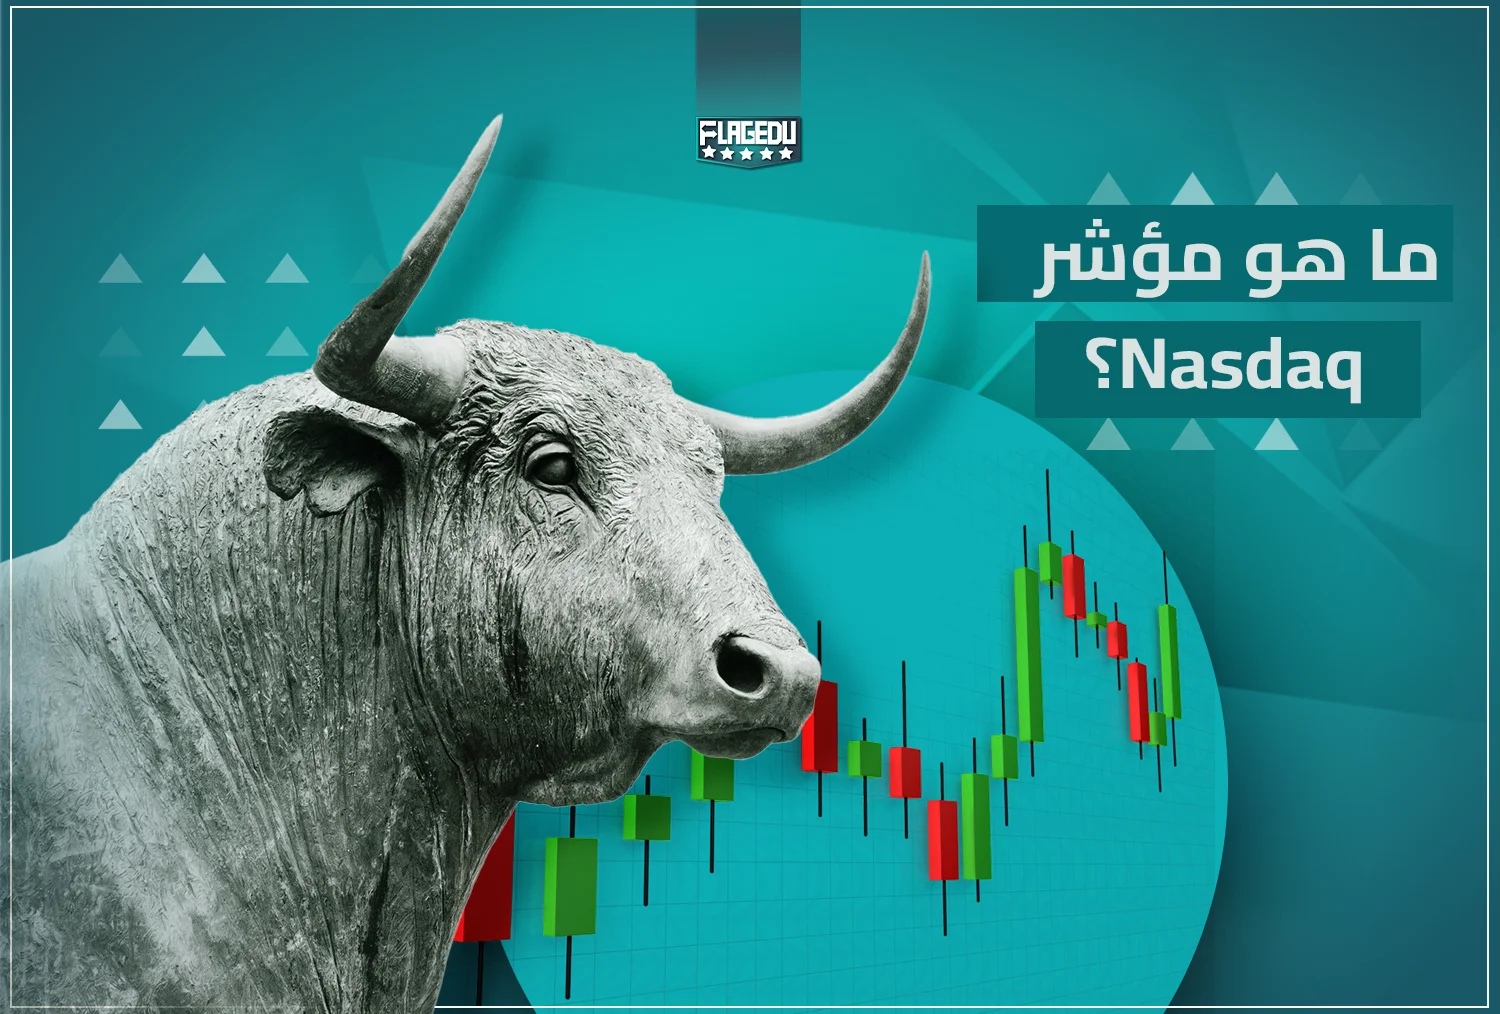 NASDAQ Index